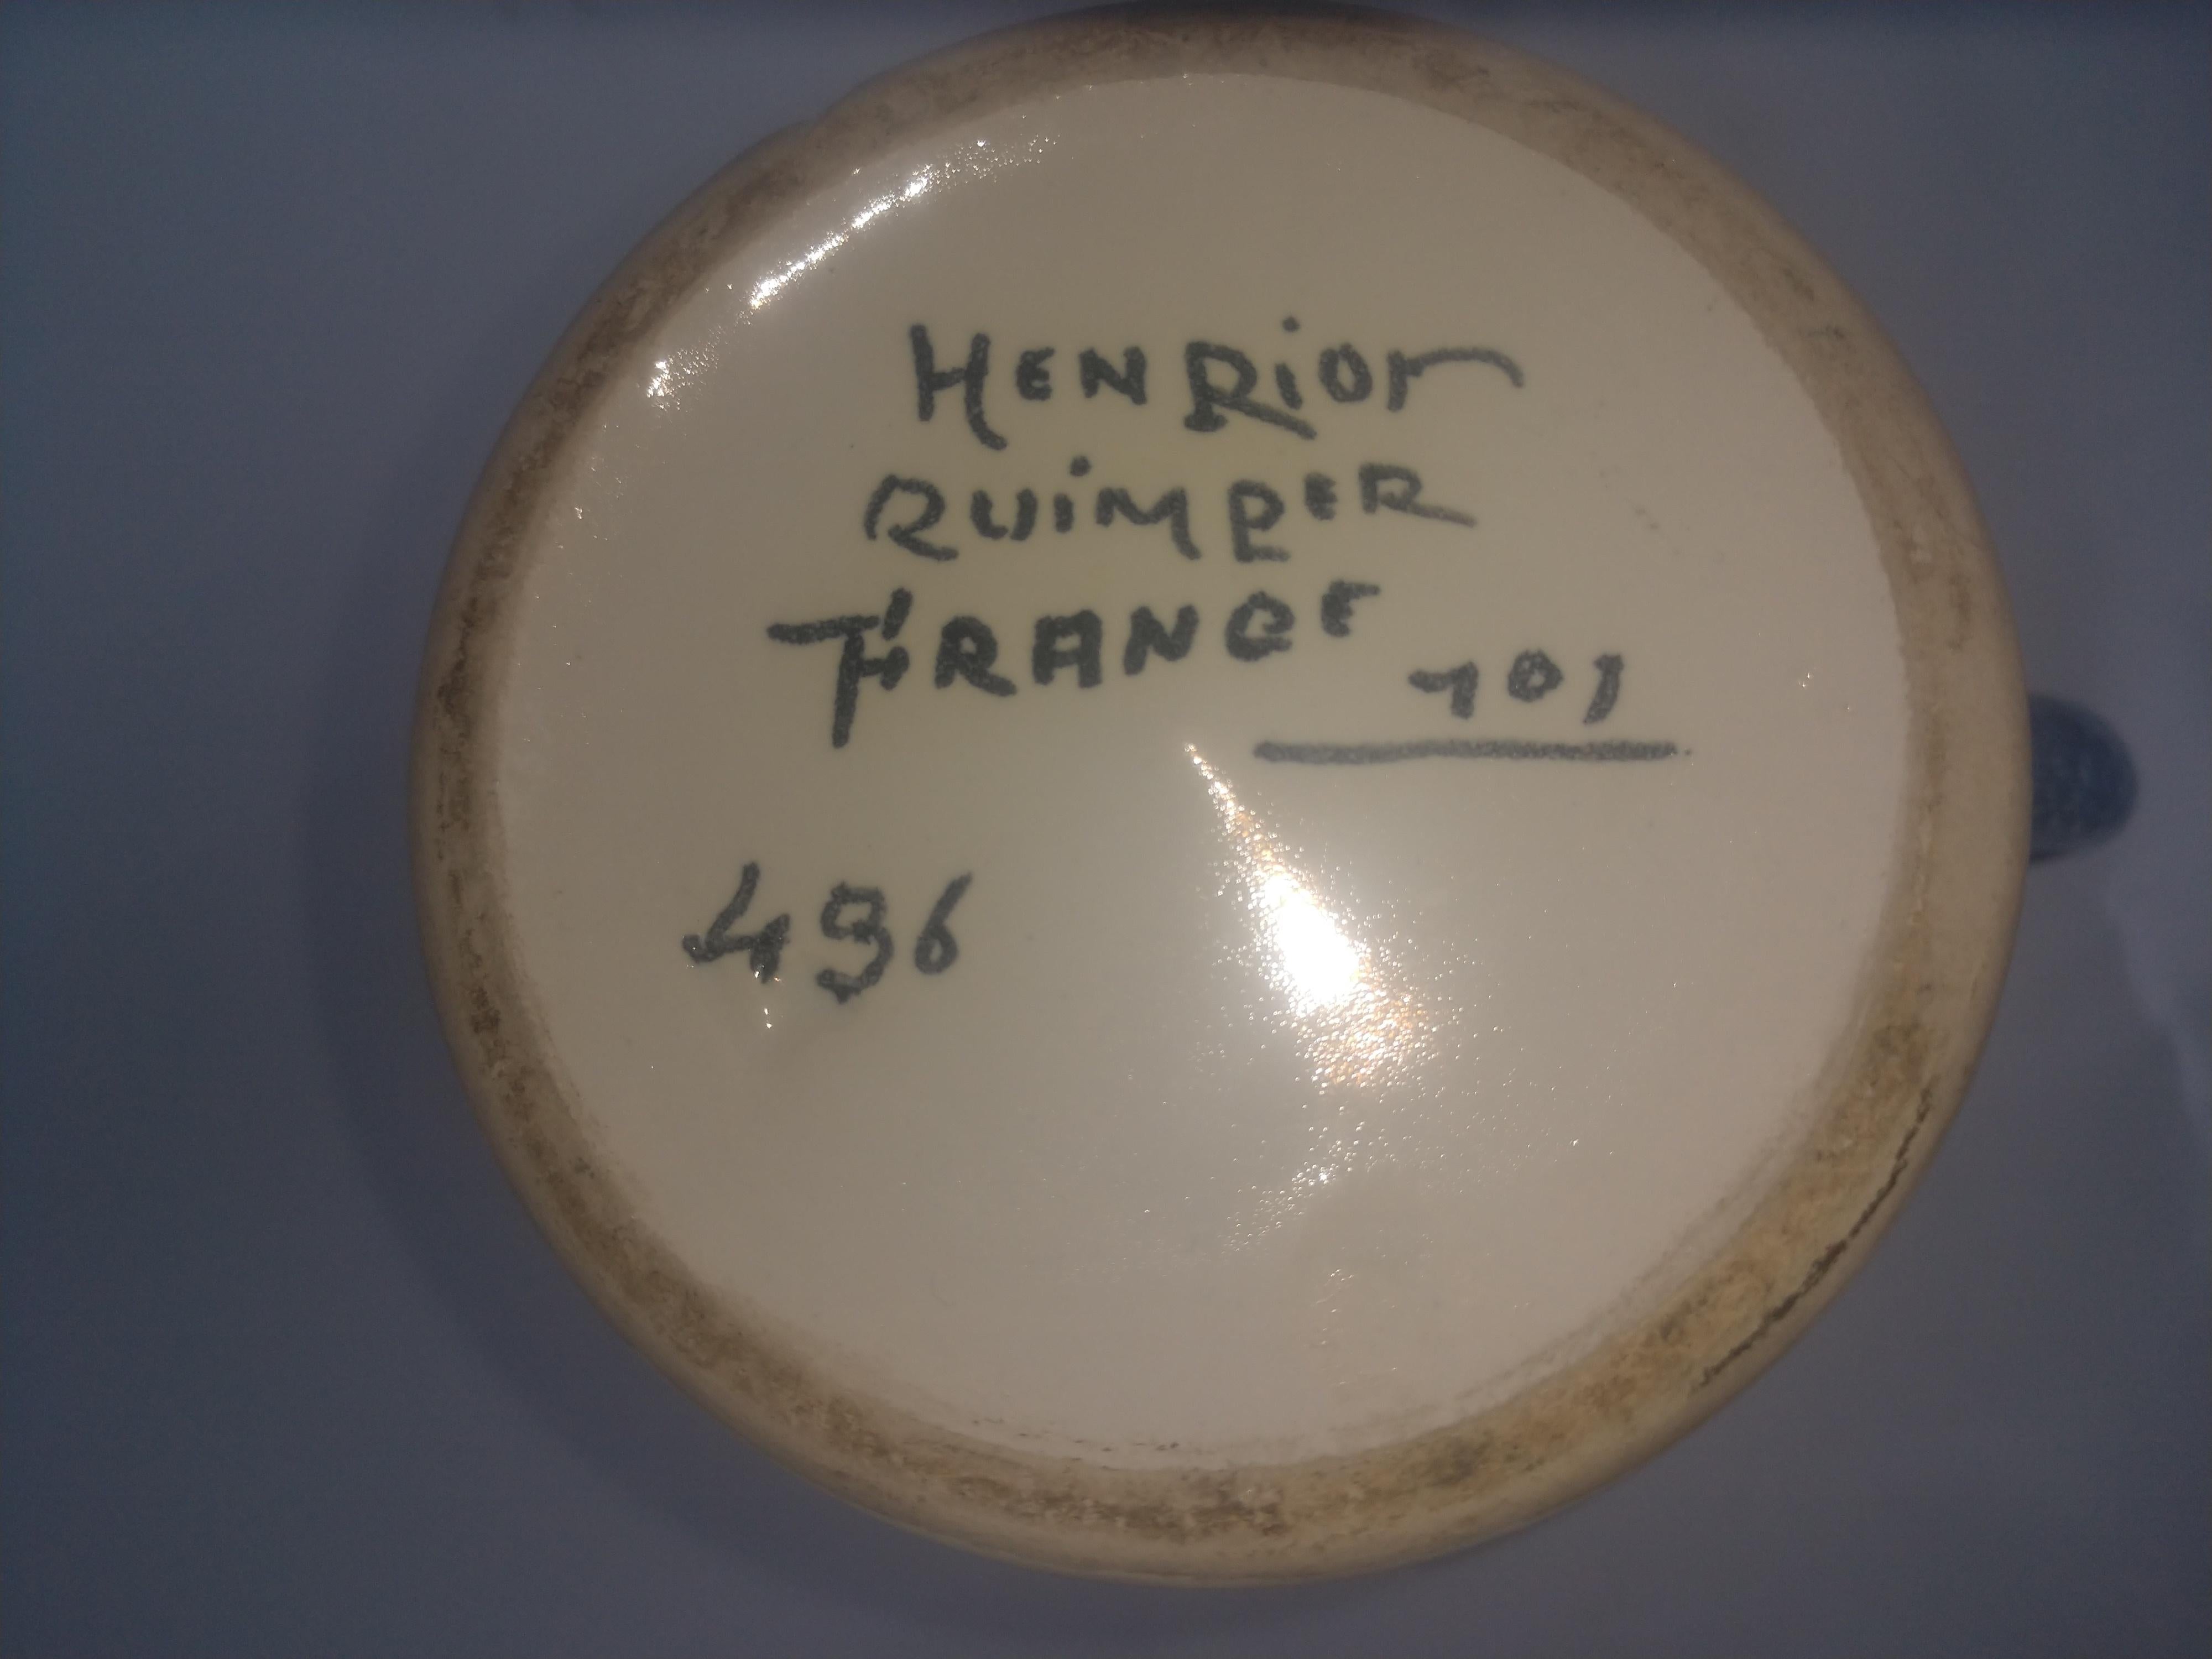 henriot quimper signature